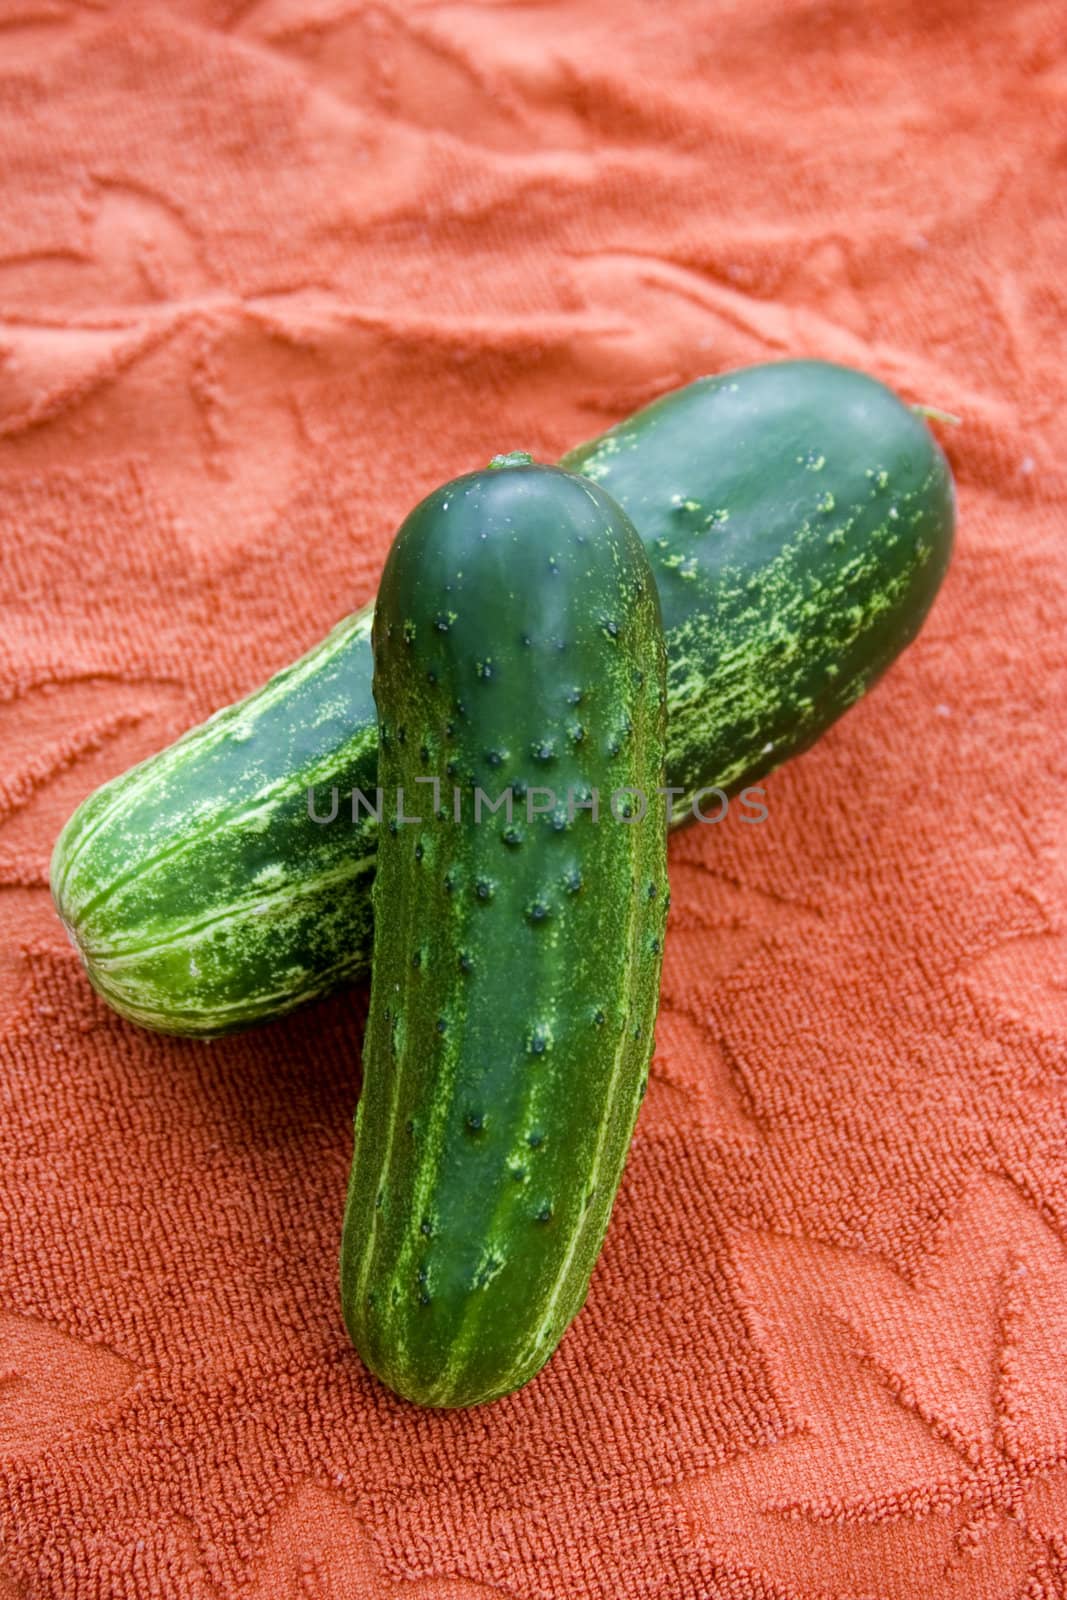 Pair of cucumbers by snokid